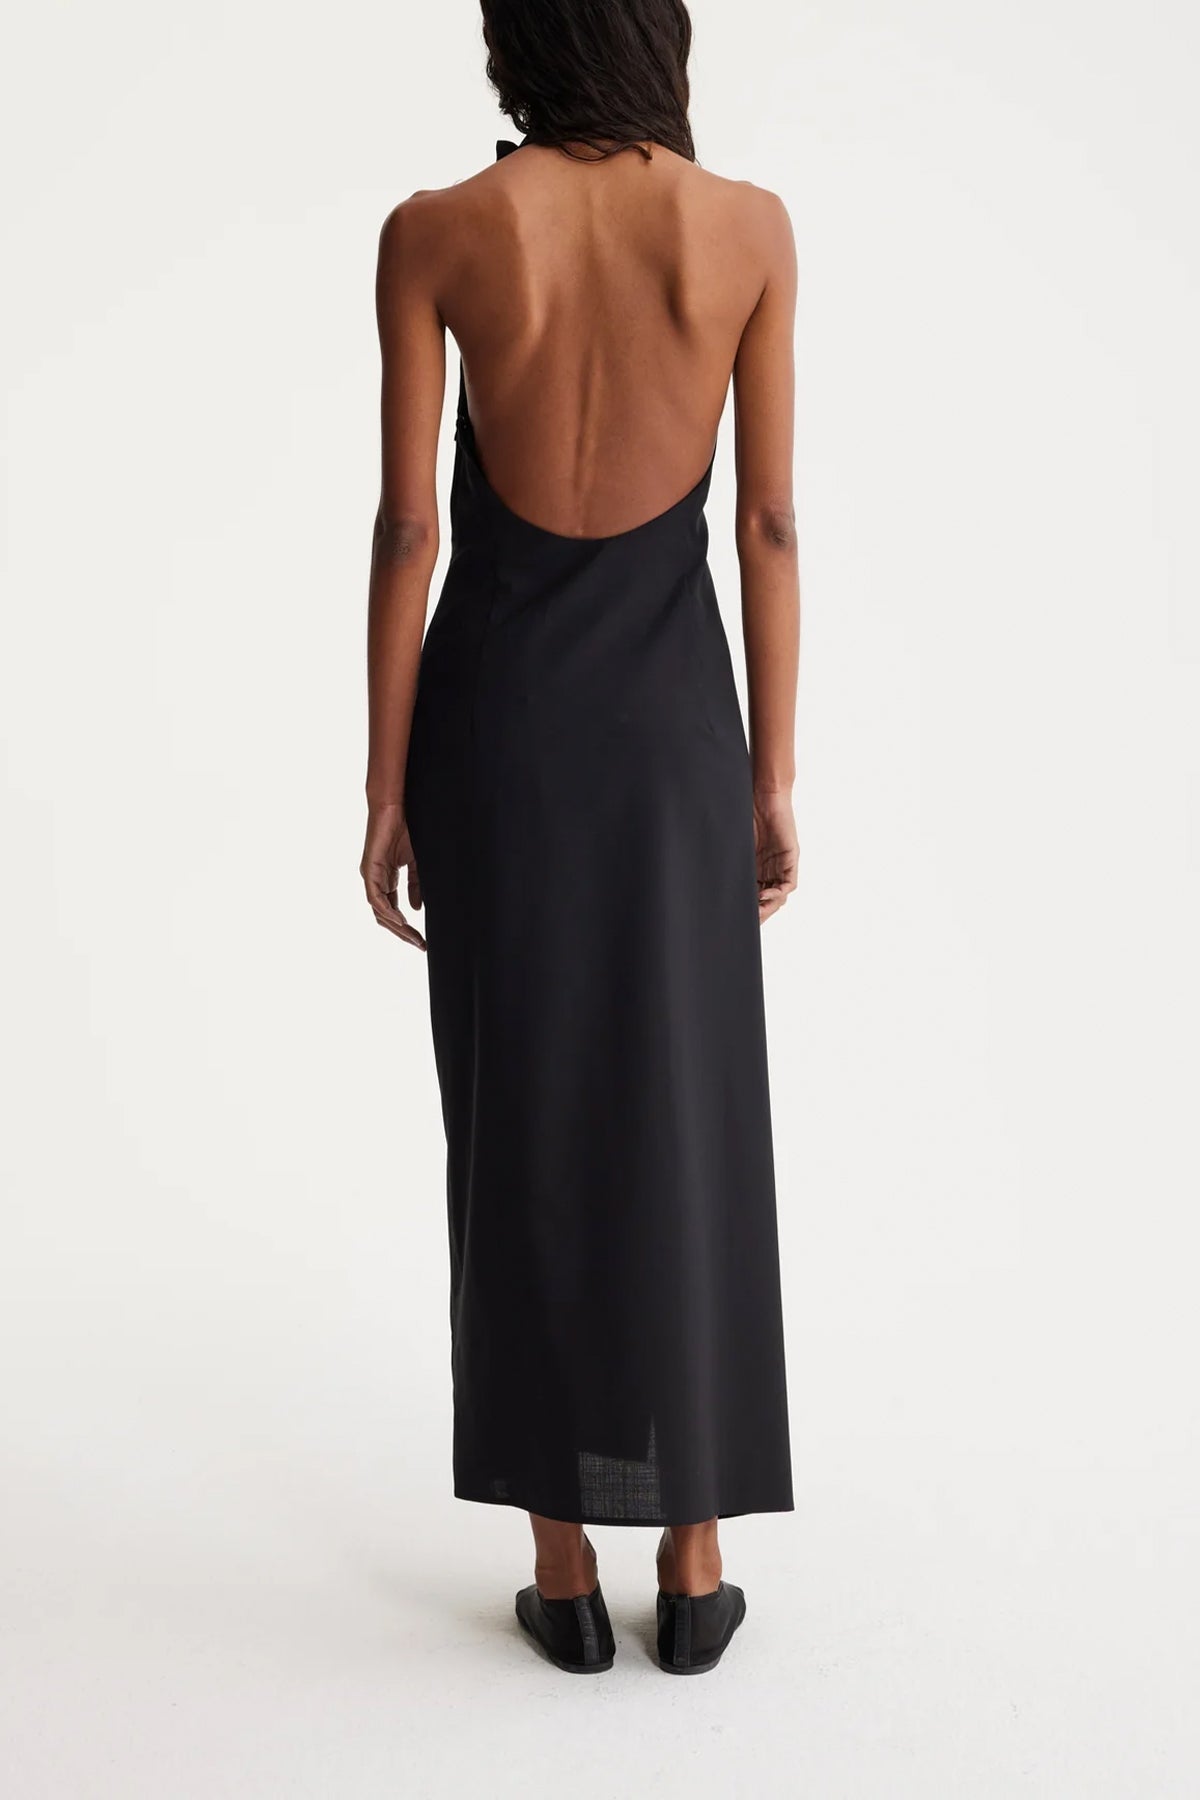 Halter Dress With Open Back in Noir - shop-olivia.com